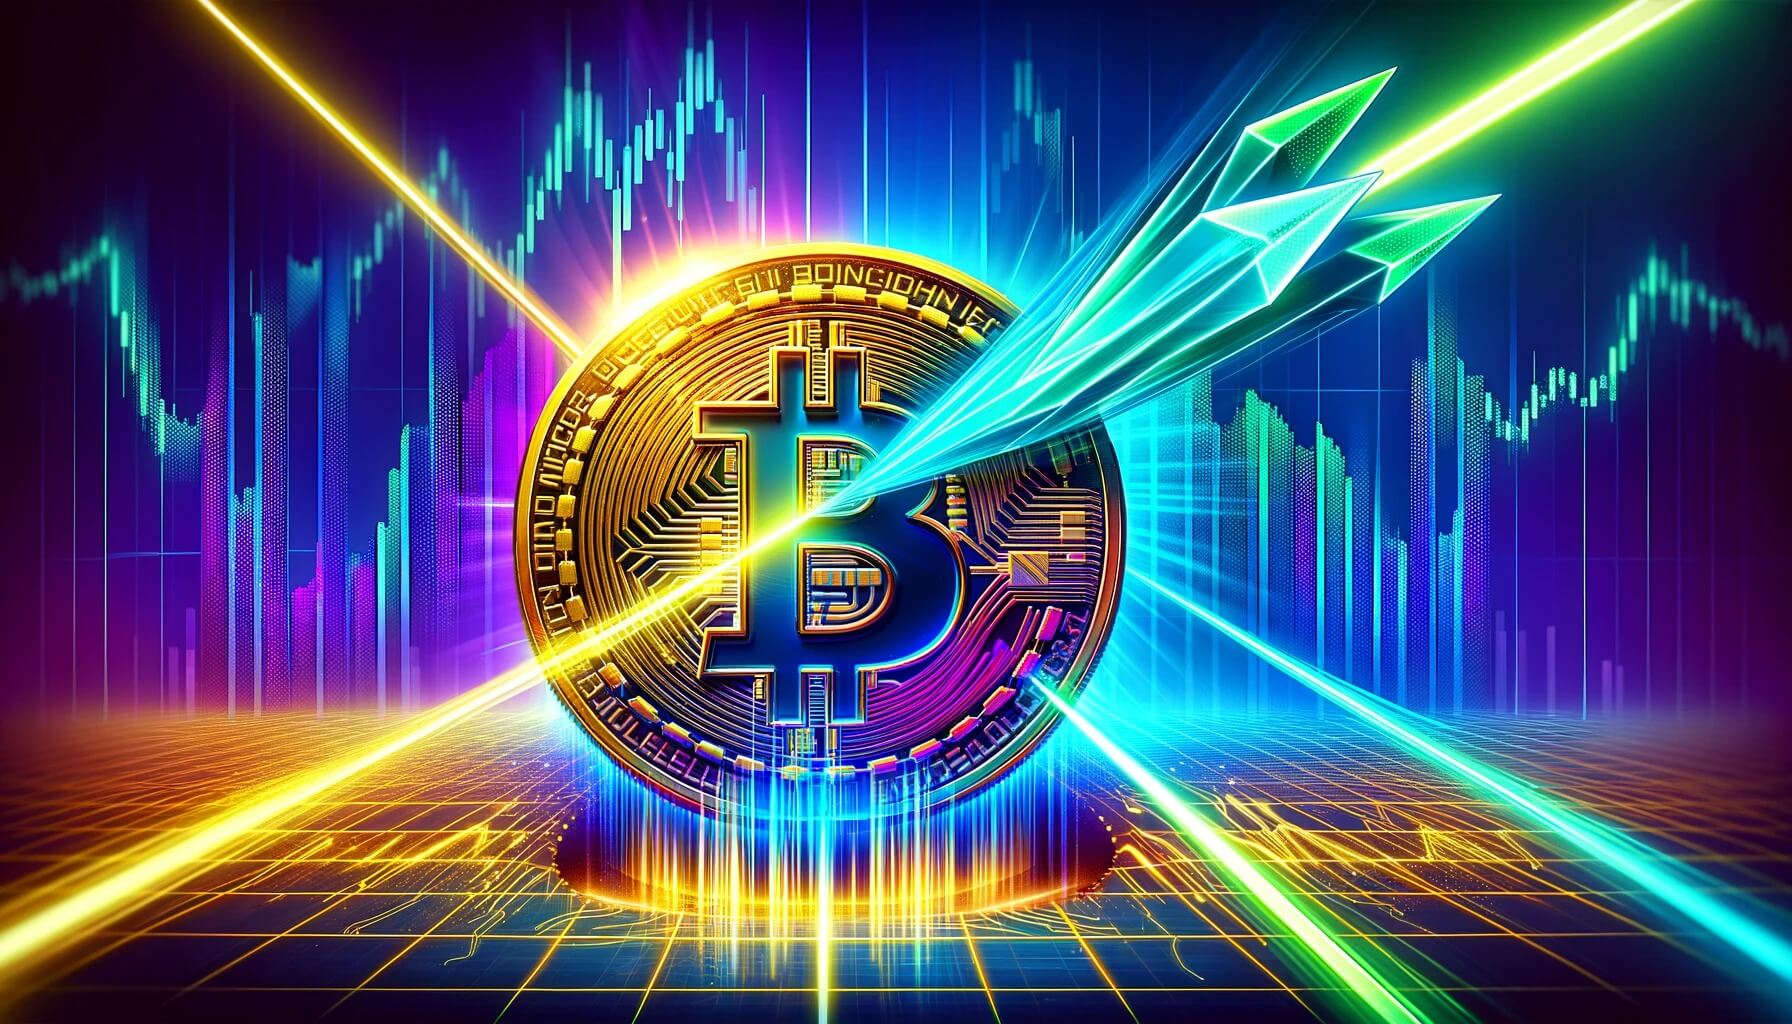 el emblema dorado de Bitcoin partido en dos con precisión por intensos rayos láser en tonos azul eléctrico y neón